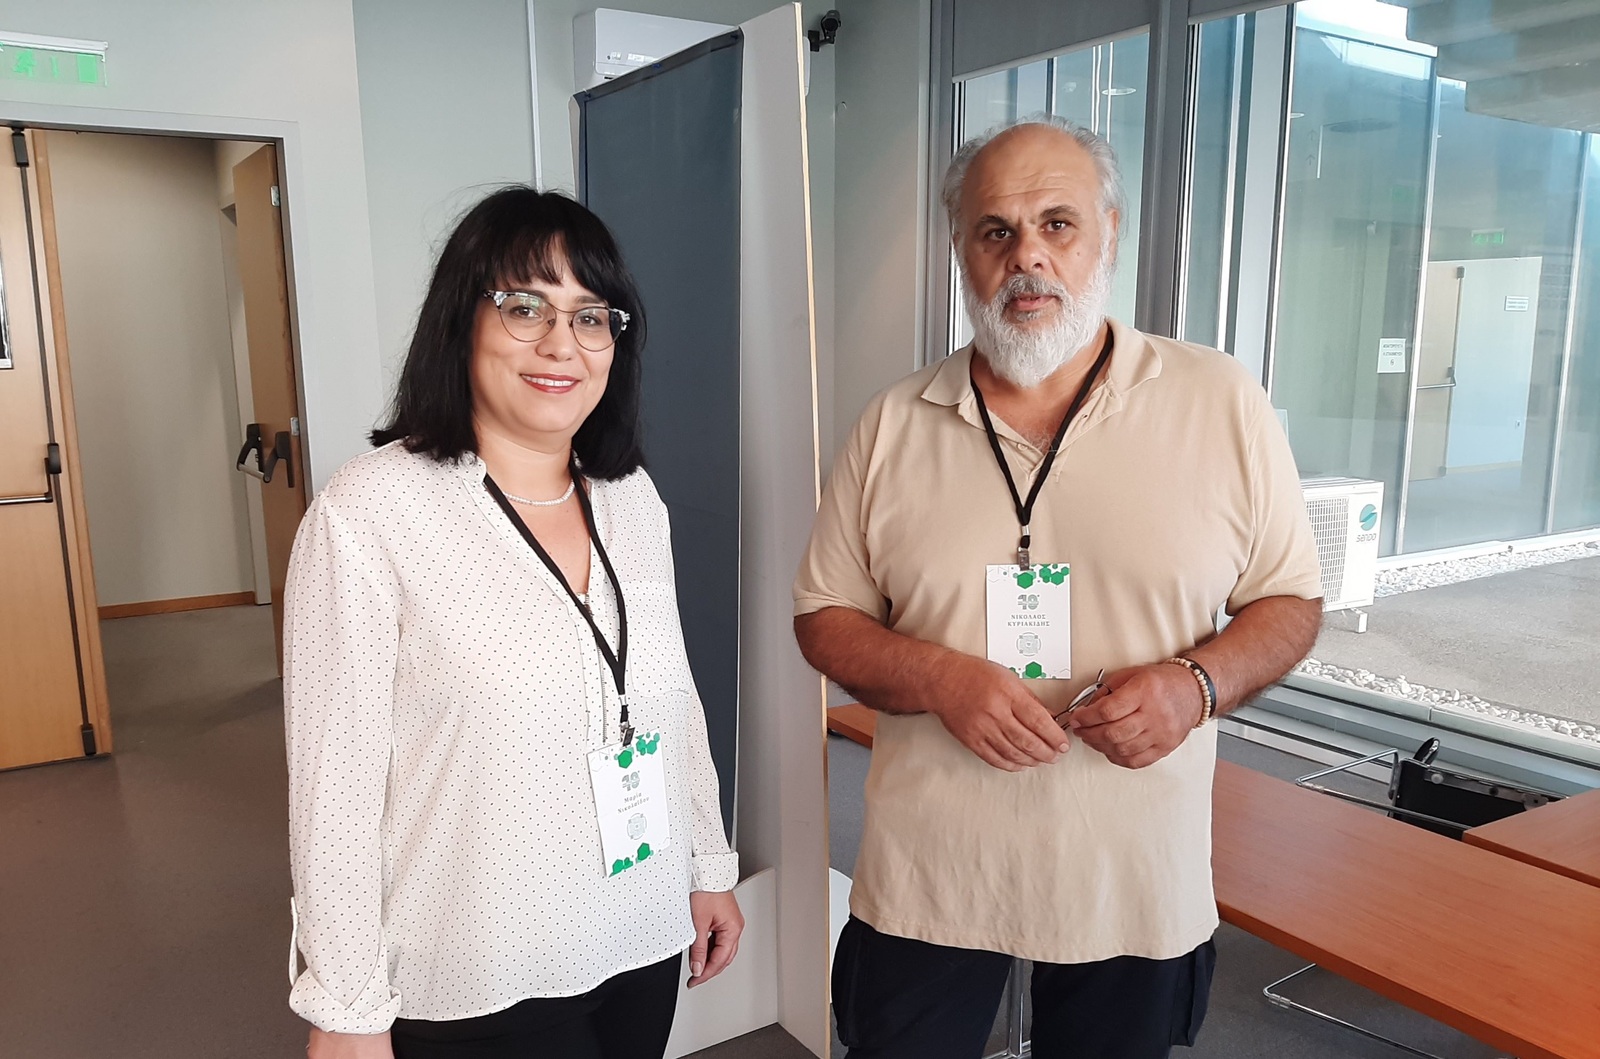 Οι συνεργάτες του Εργαστηρίου Ιατρικής Φυσικής και Ψηφιακής Καινοτομίας του ΑΠΘ Μαρία Νικολαίδου και Νίκος Κυριακίδης